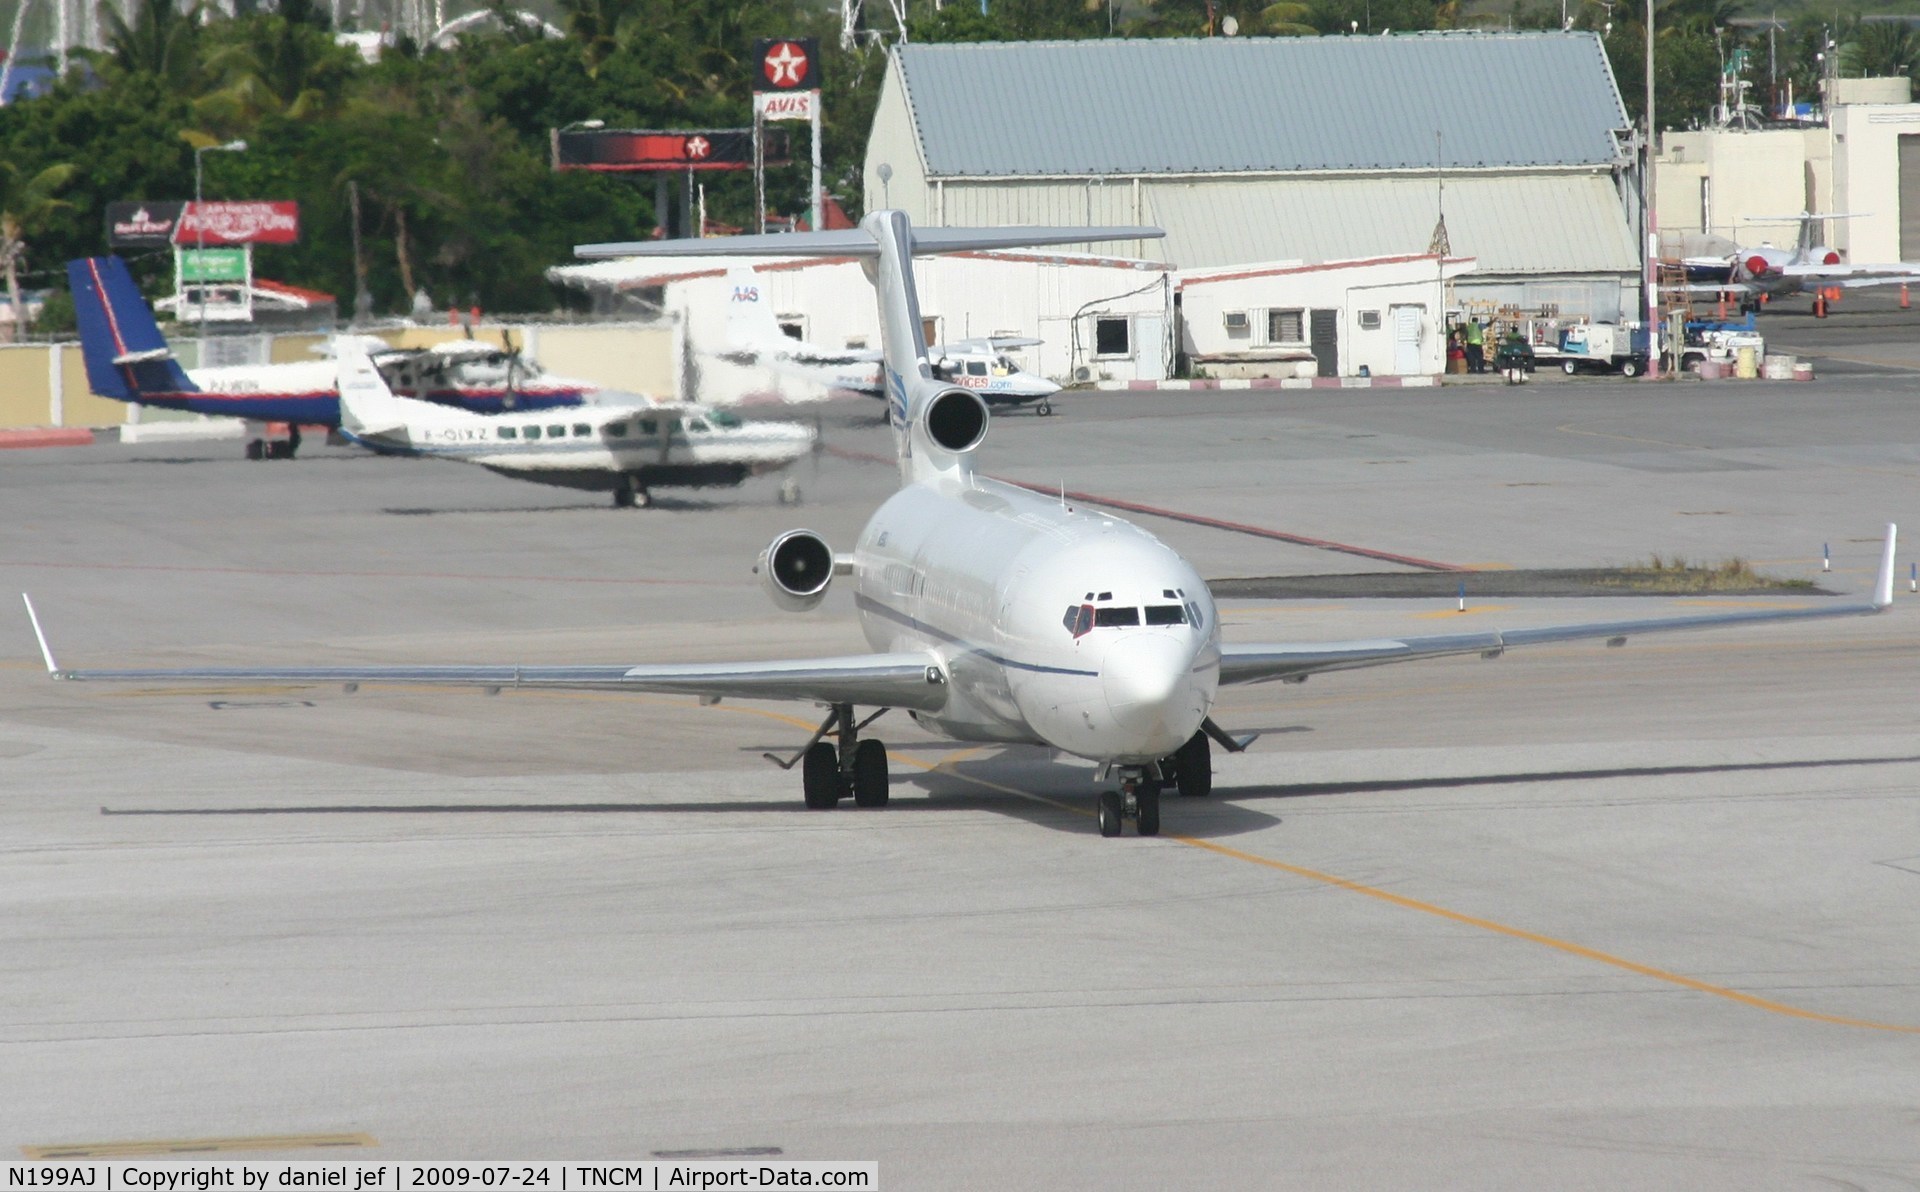 N199AJ, 1979 Boeing 727-2F9 C/N 21426, taxing to the runway